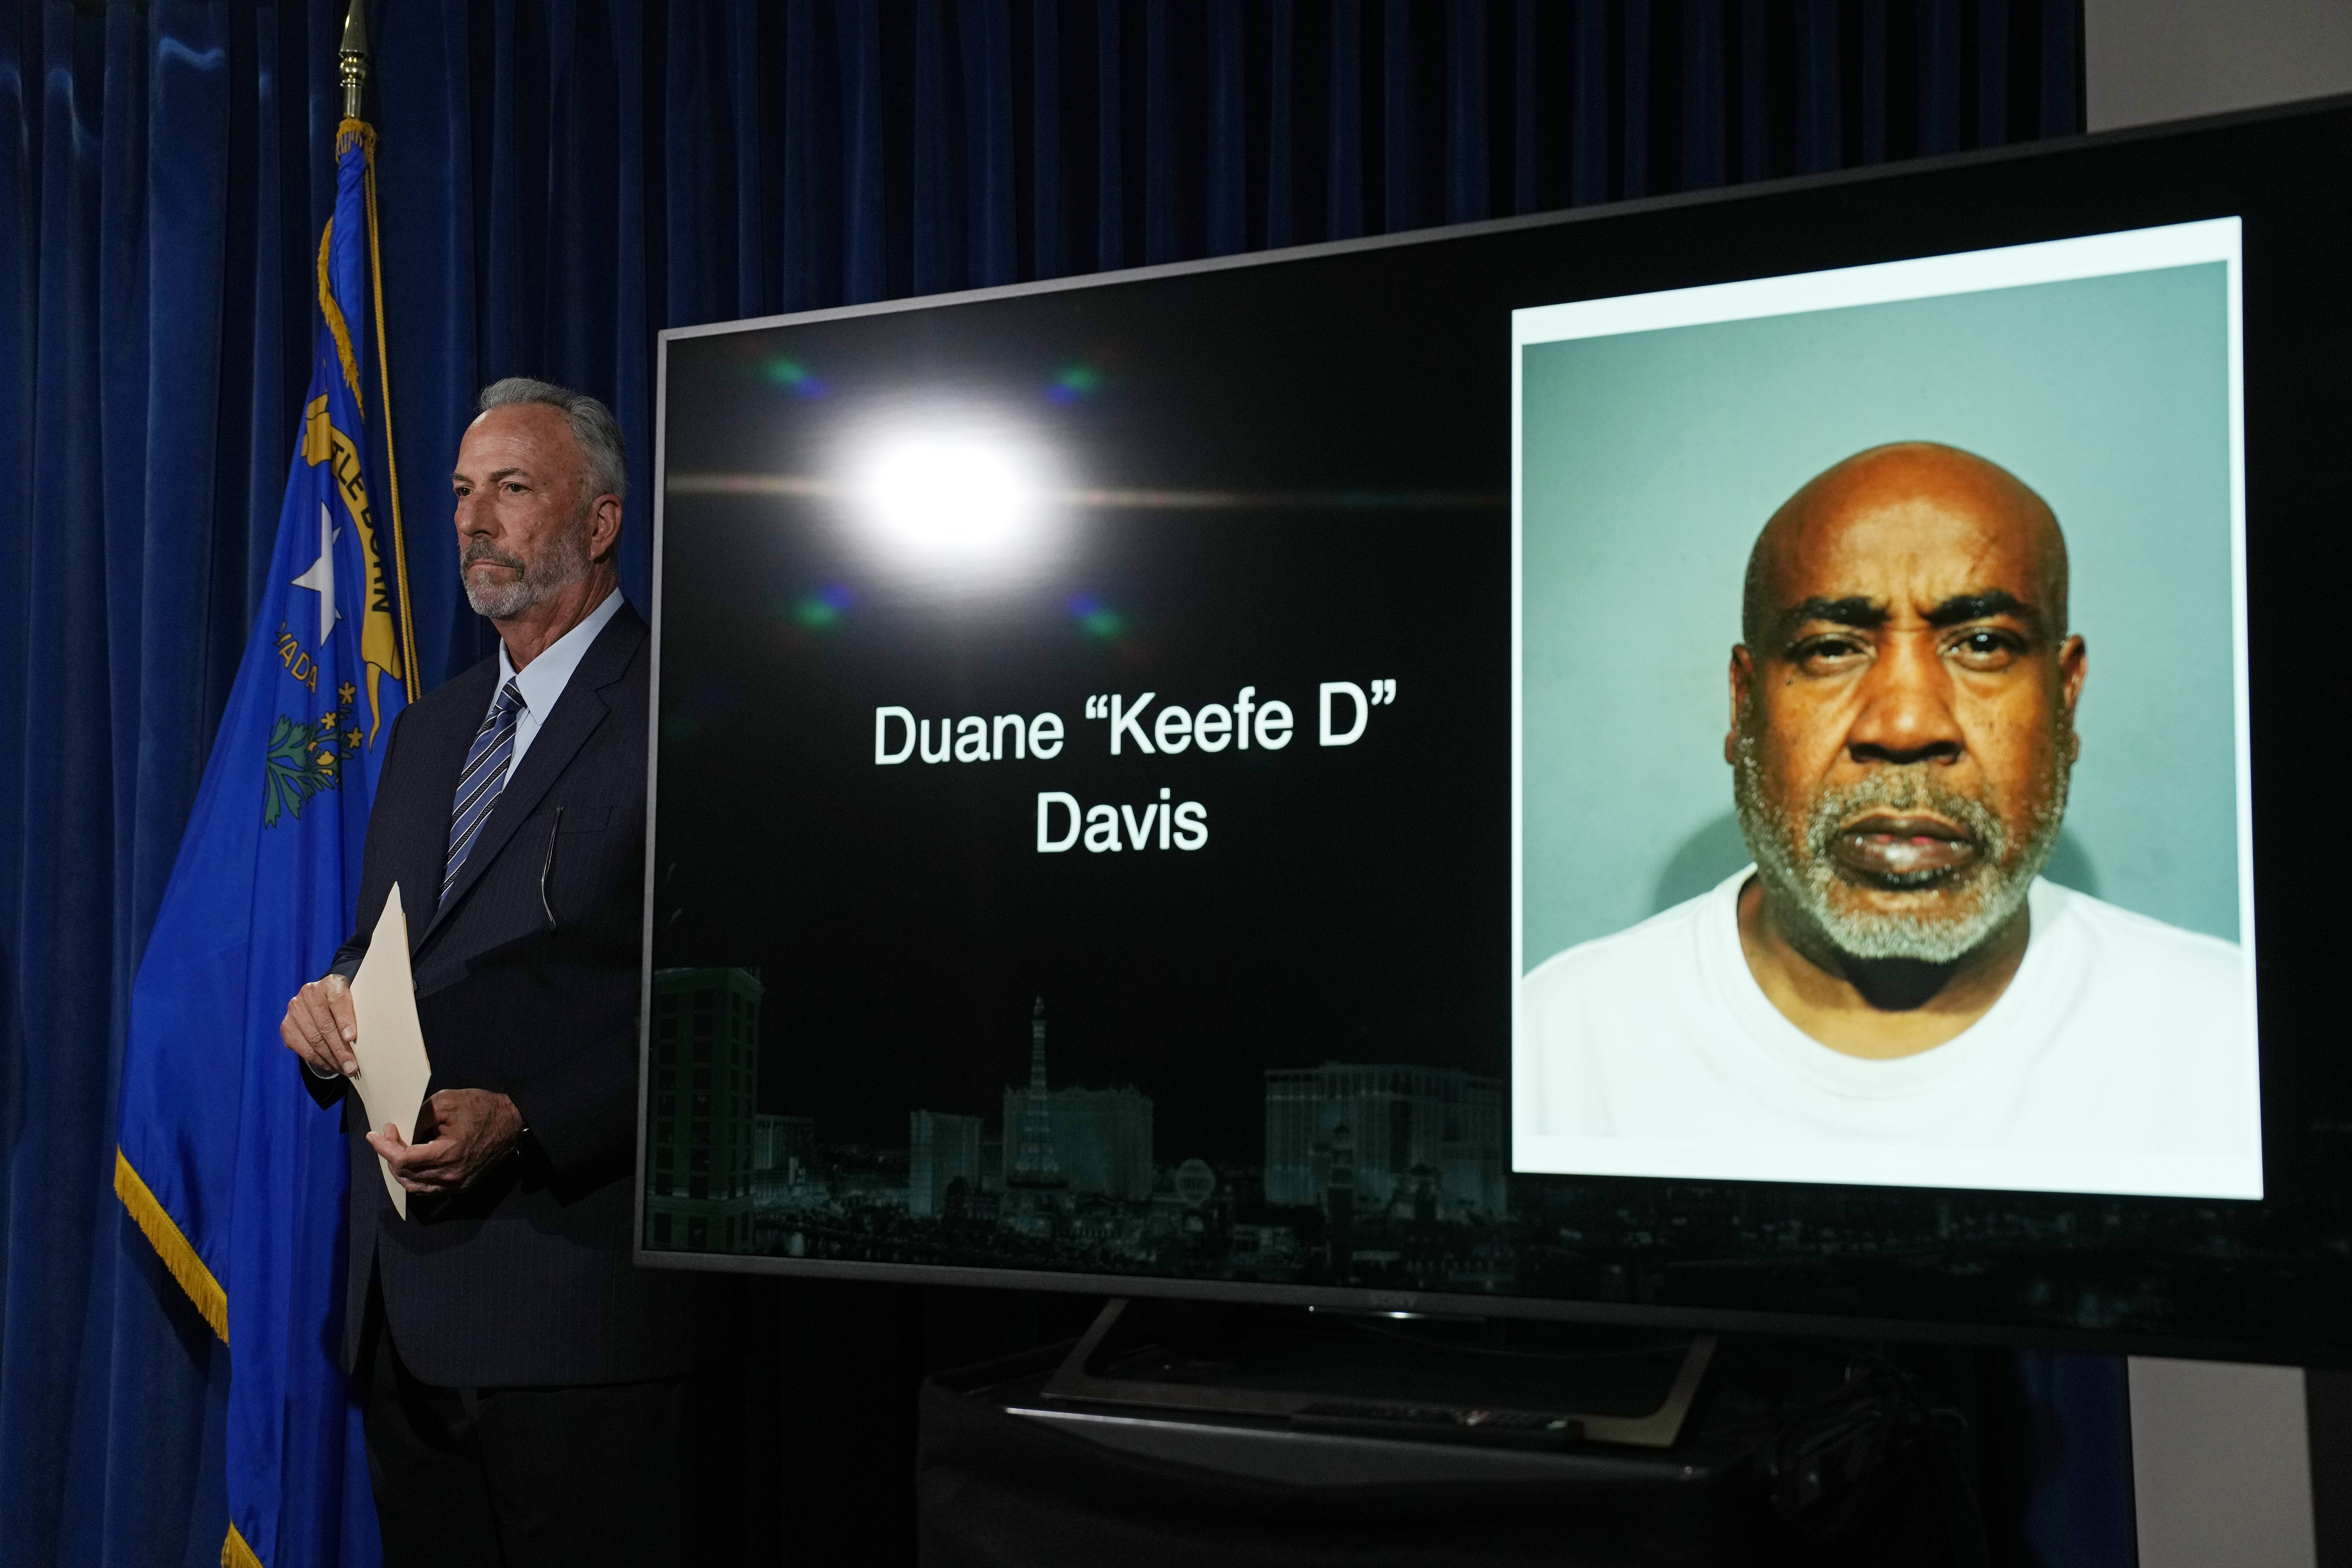 Berichten zufolge prahlte Keefe D jahrzehntelang mit seiner Beteiligung an dem Mord